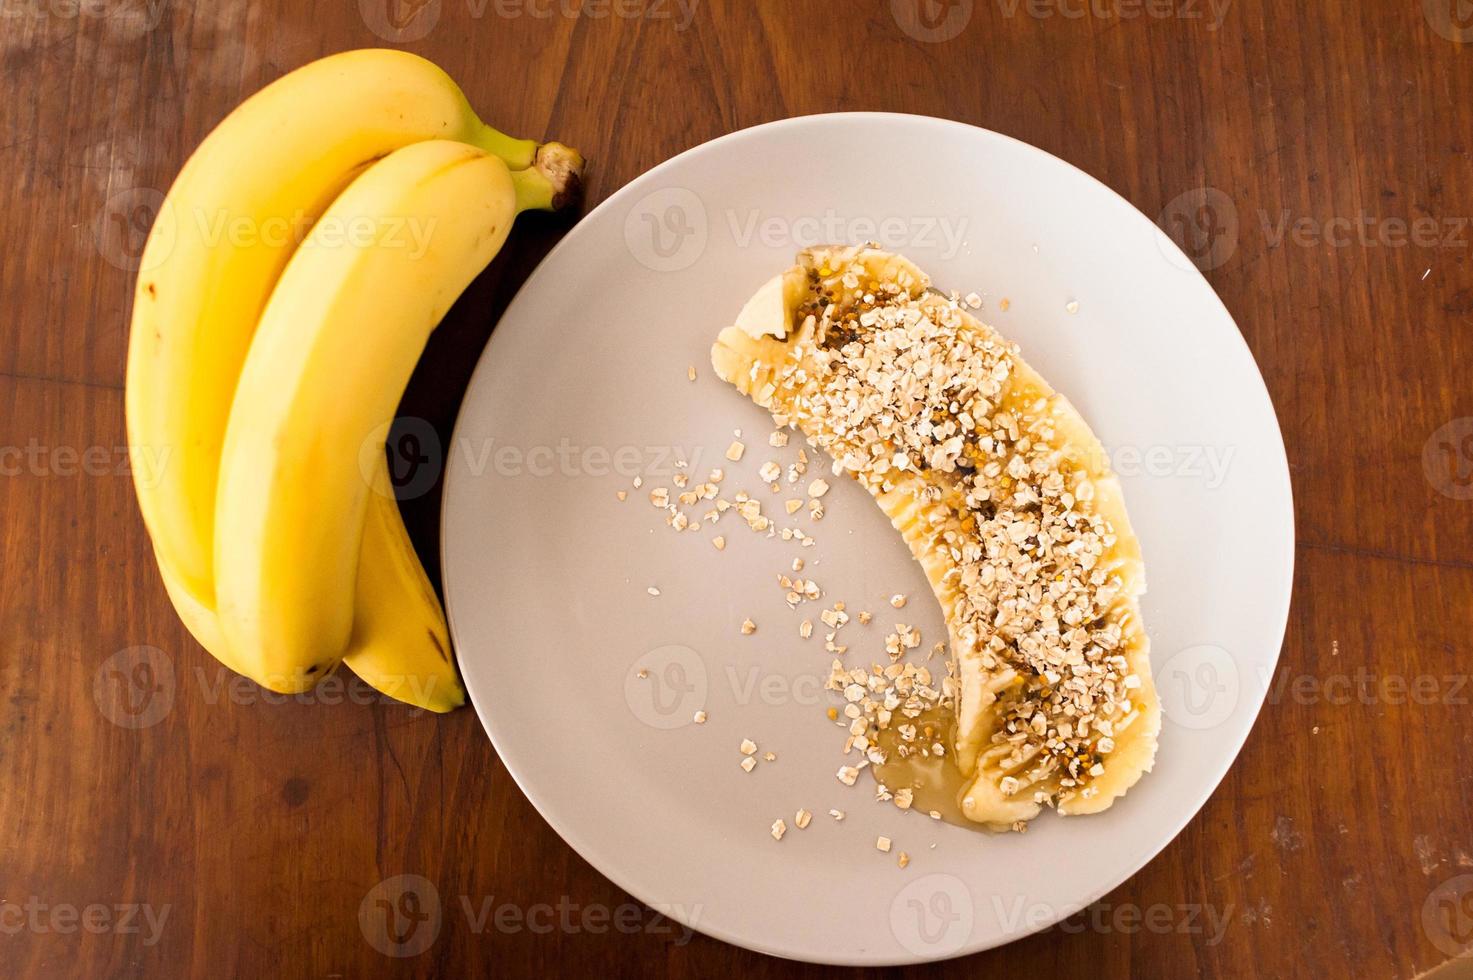 Vue grand angle d'une banane en tranches recouverte d'avoine et de miel photo